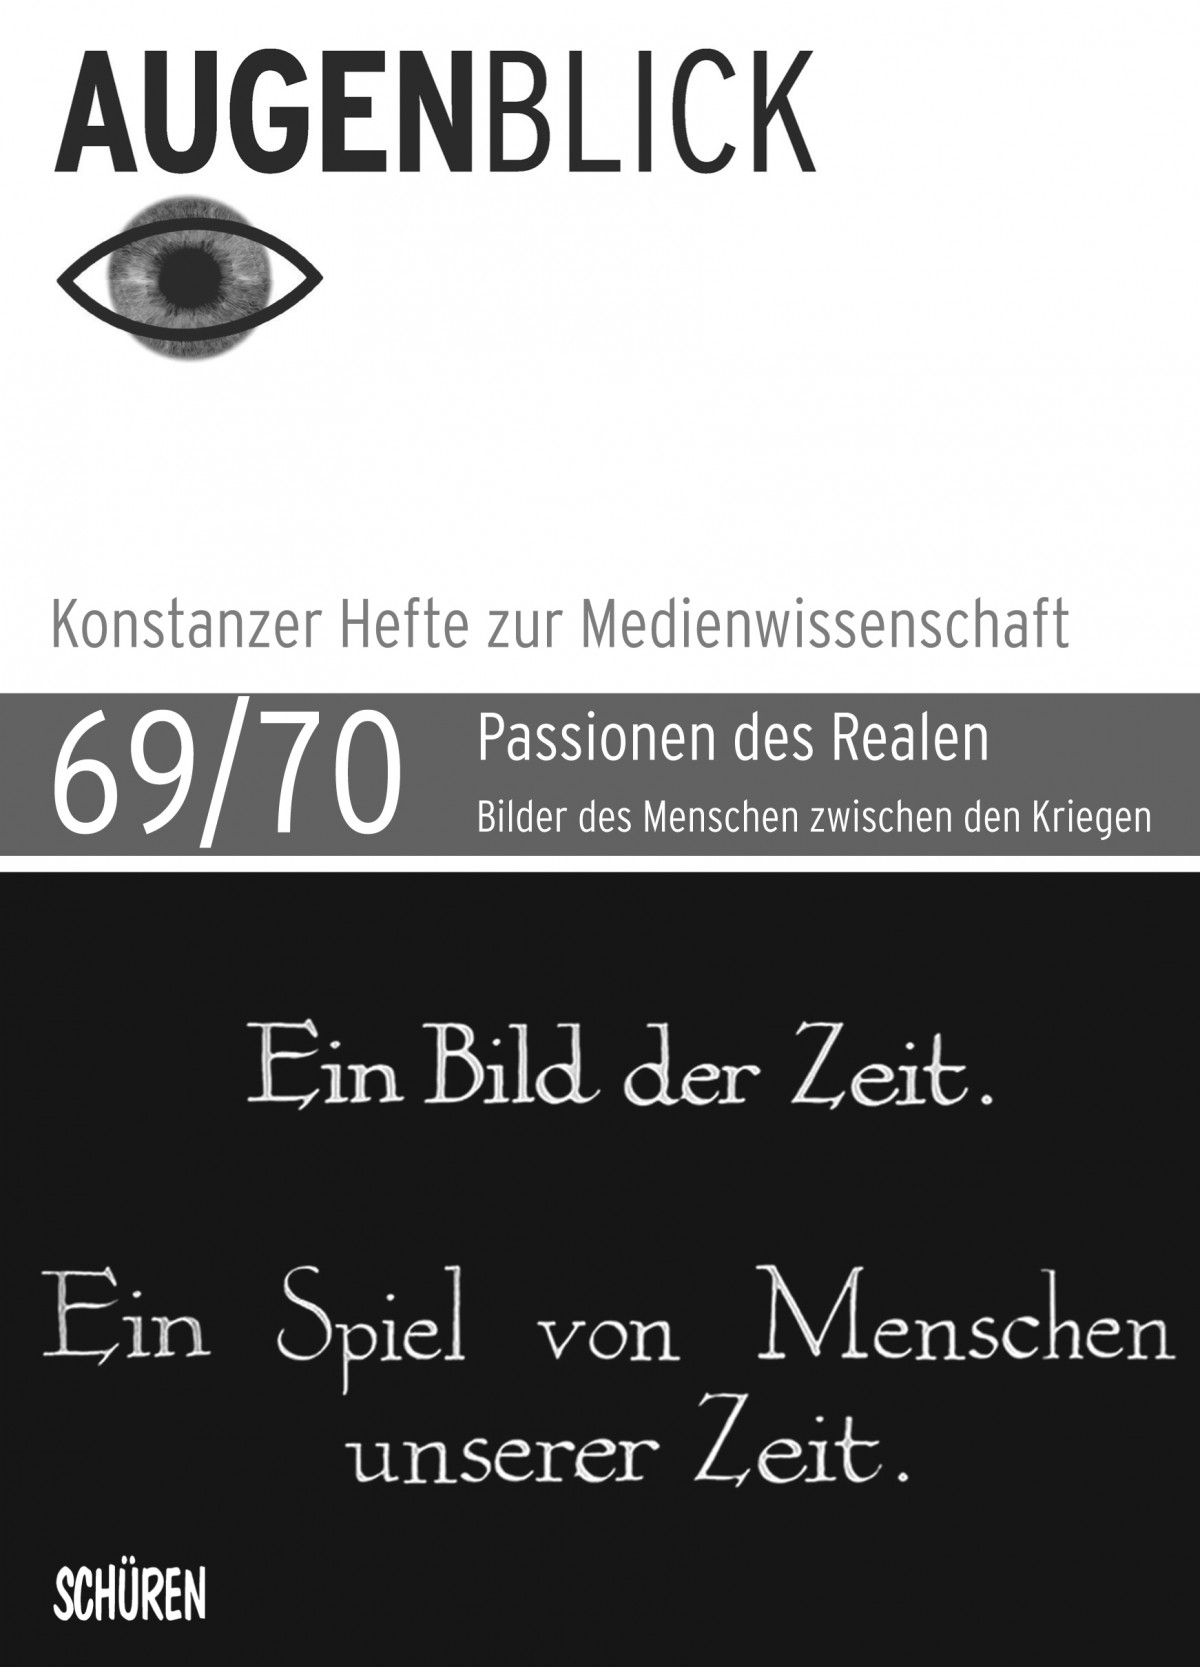 Cover der Zeitschrift Augenblick, Ausgabe 69/70